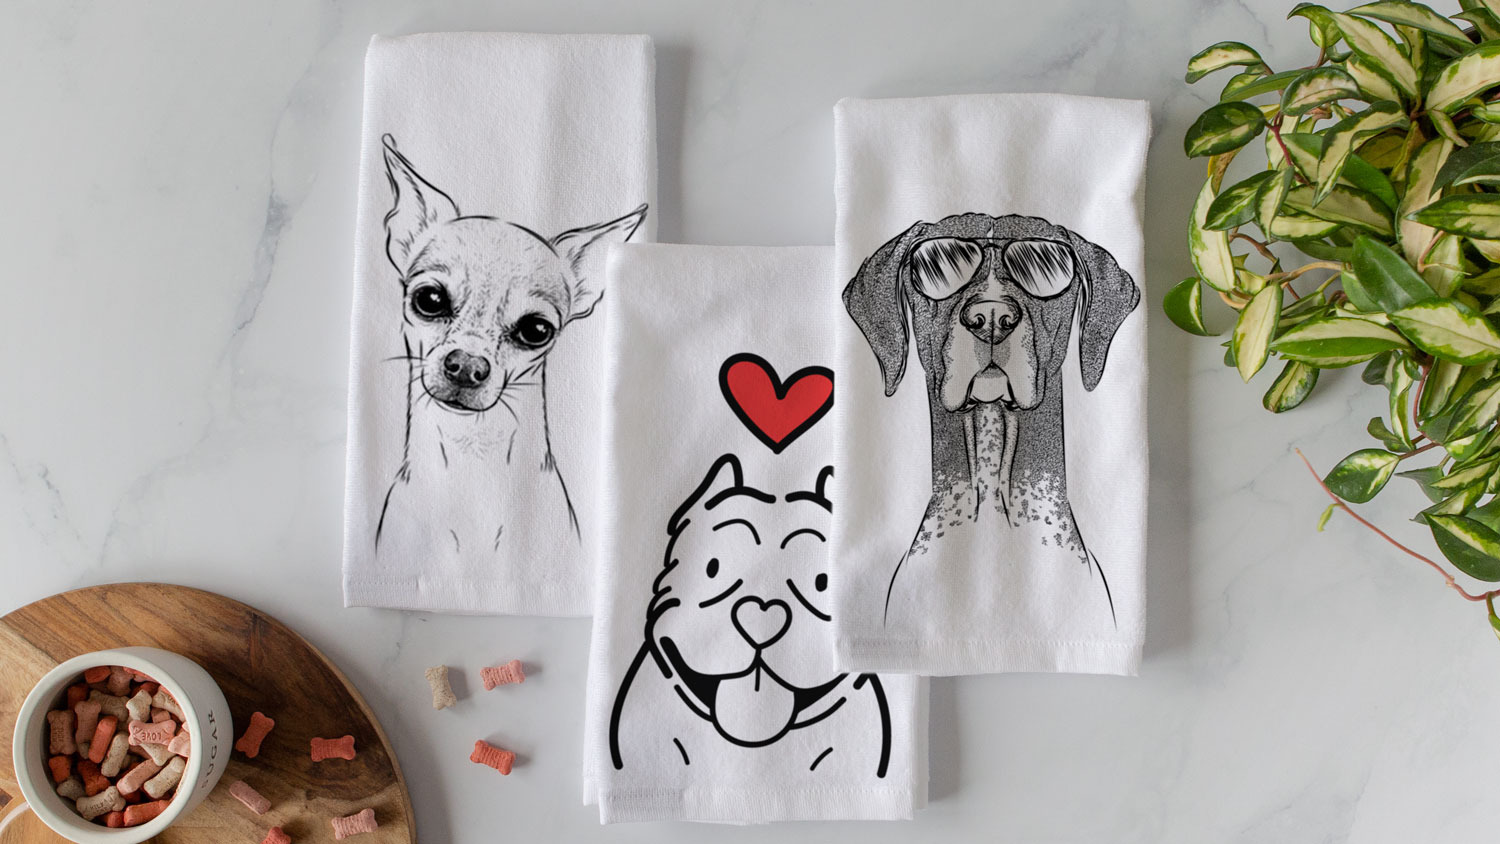 Dog towels